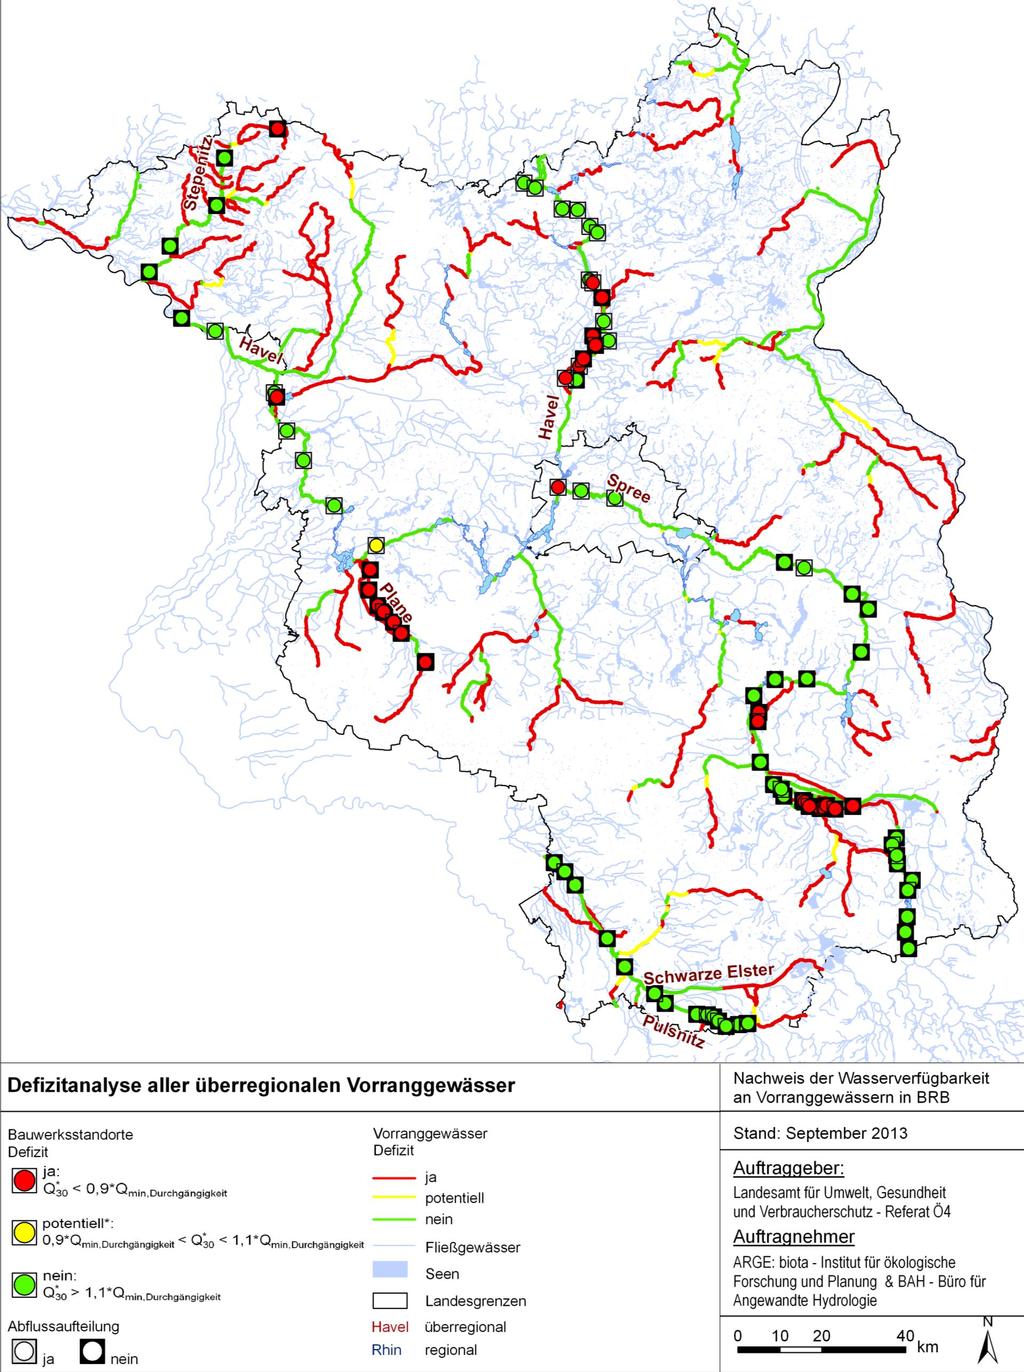 5.1 Überregionale Vorranggewässer Abbildung 5-1 zeigt eine Übersicht über die Defizitanalyse der Querbauwerksstandorte der überregionalen Vorranggewässer.